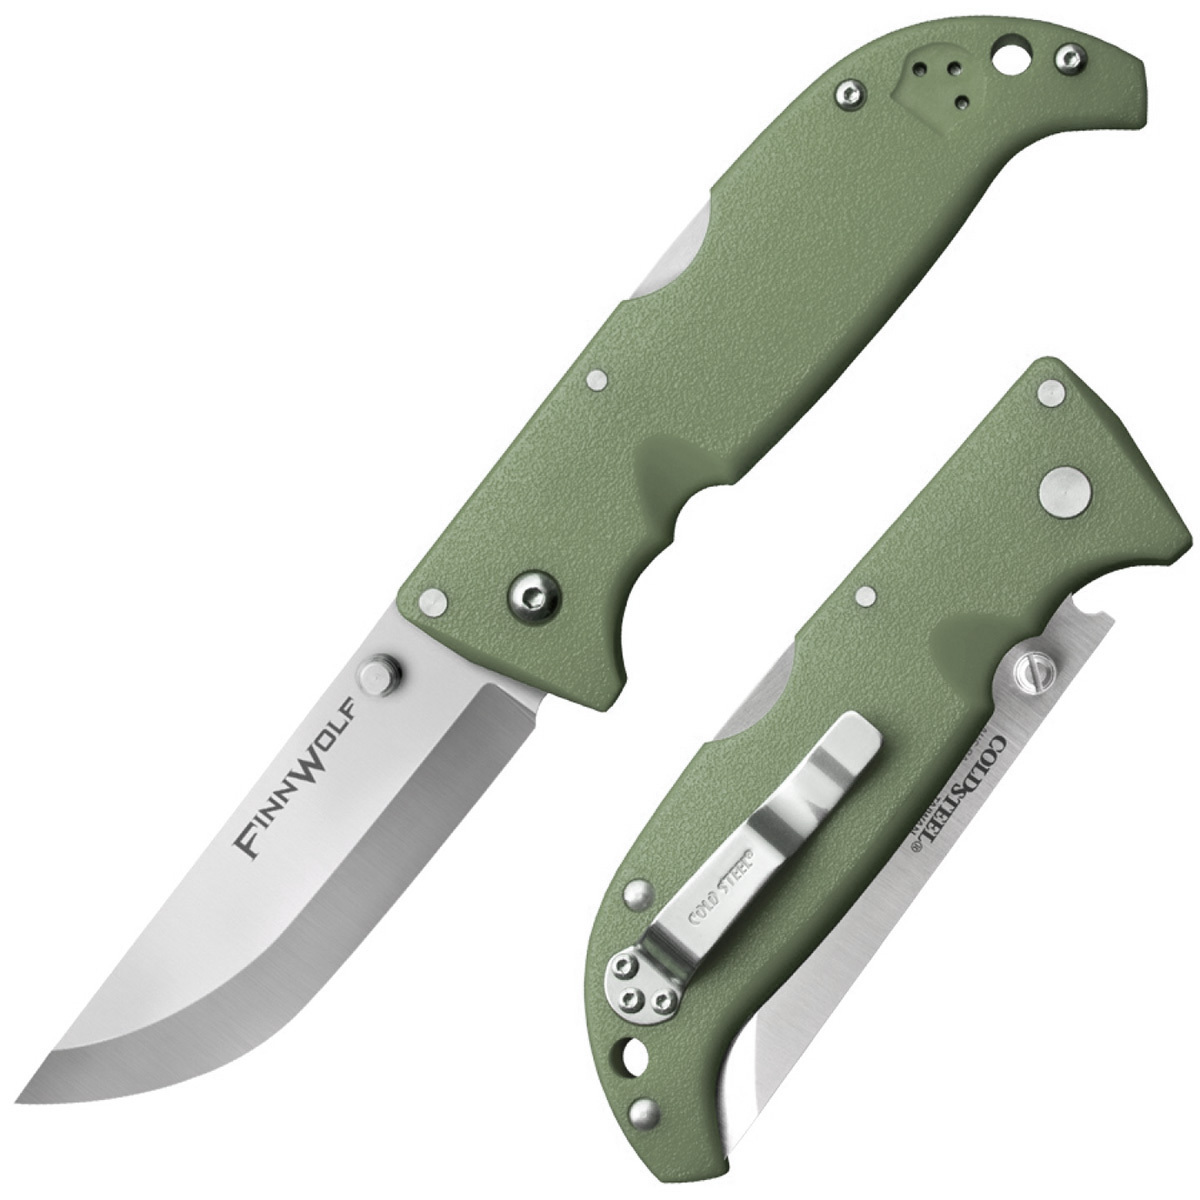 Складной нож Finn Wolf - Cold Steel 20NPFZ, сталь AUS-8A, рукоять Grivory® (высококачественный пластик), Зеленый, блистер